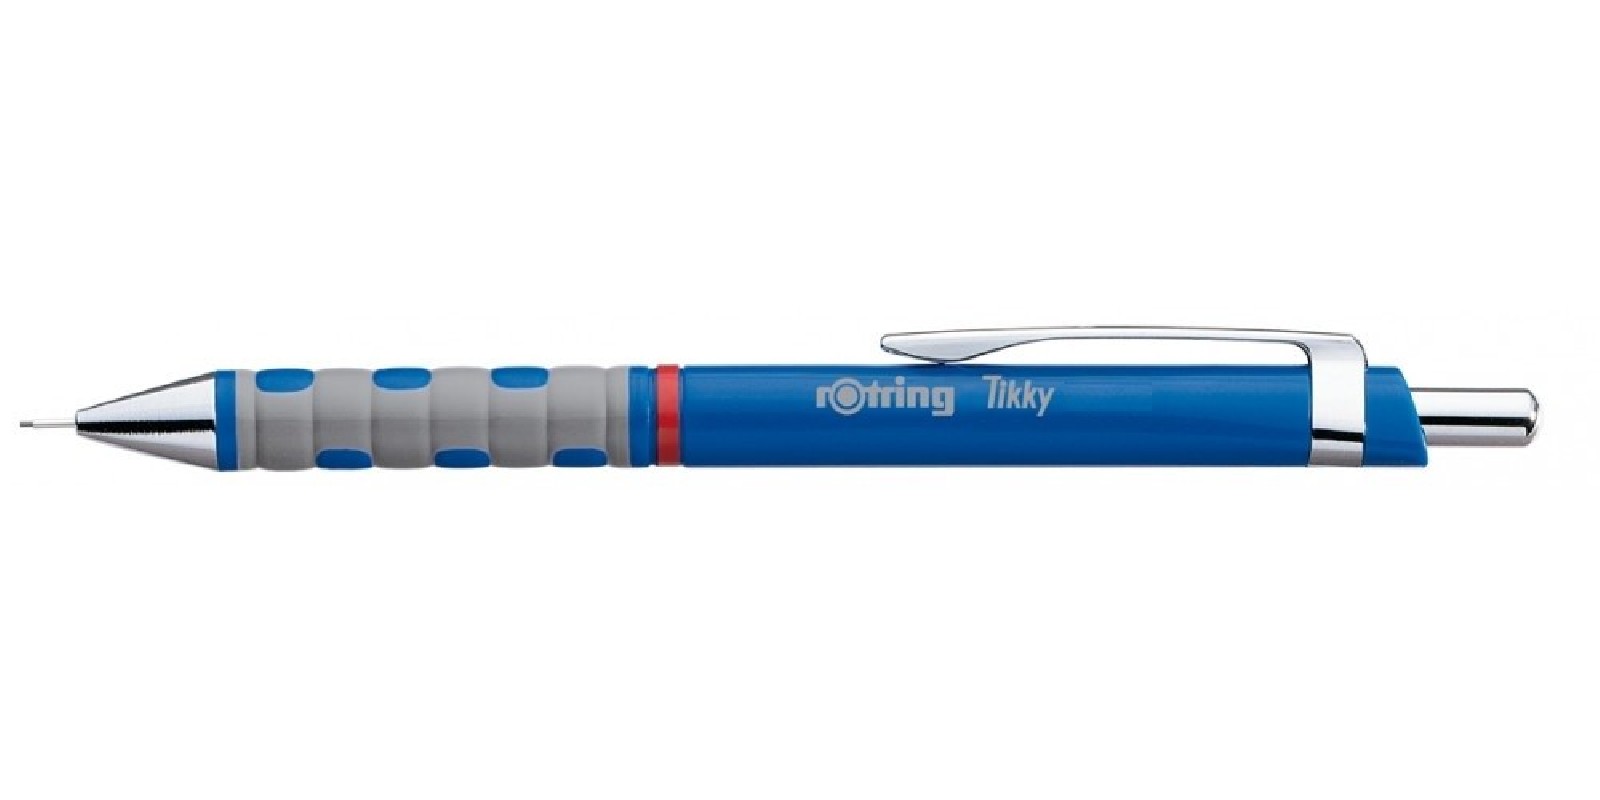 قلم سنون روترينج تيكي،  سن رصاص 0.7  ملم ، أزرق